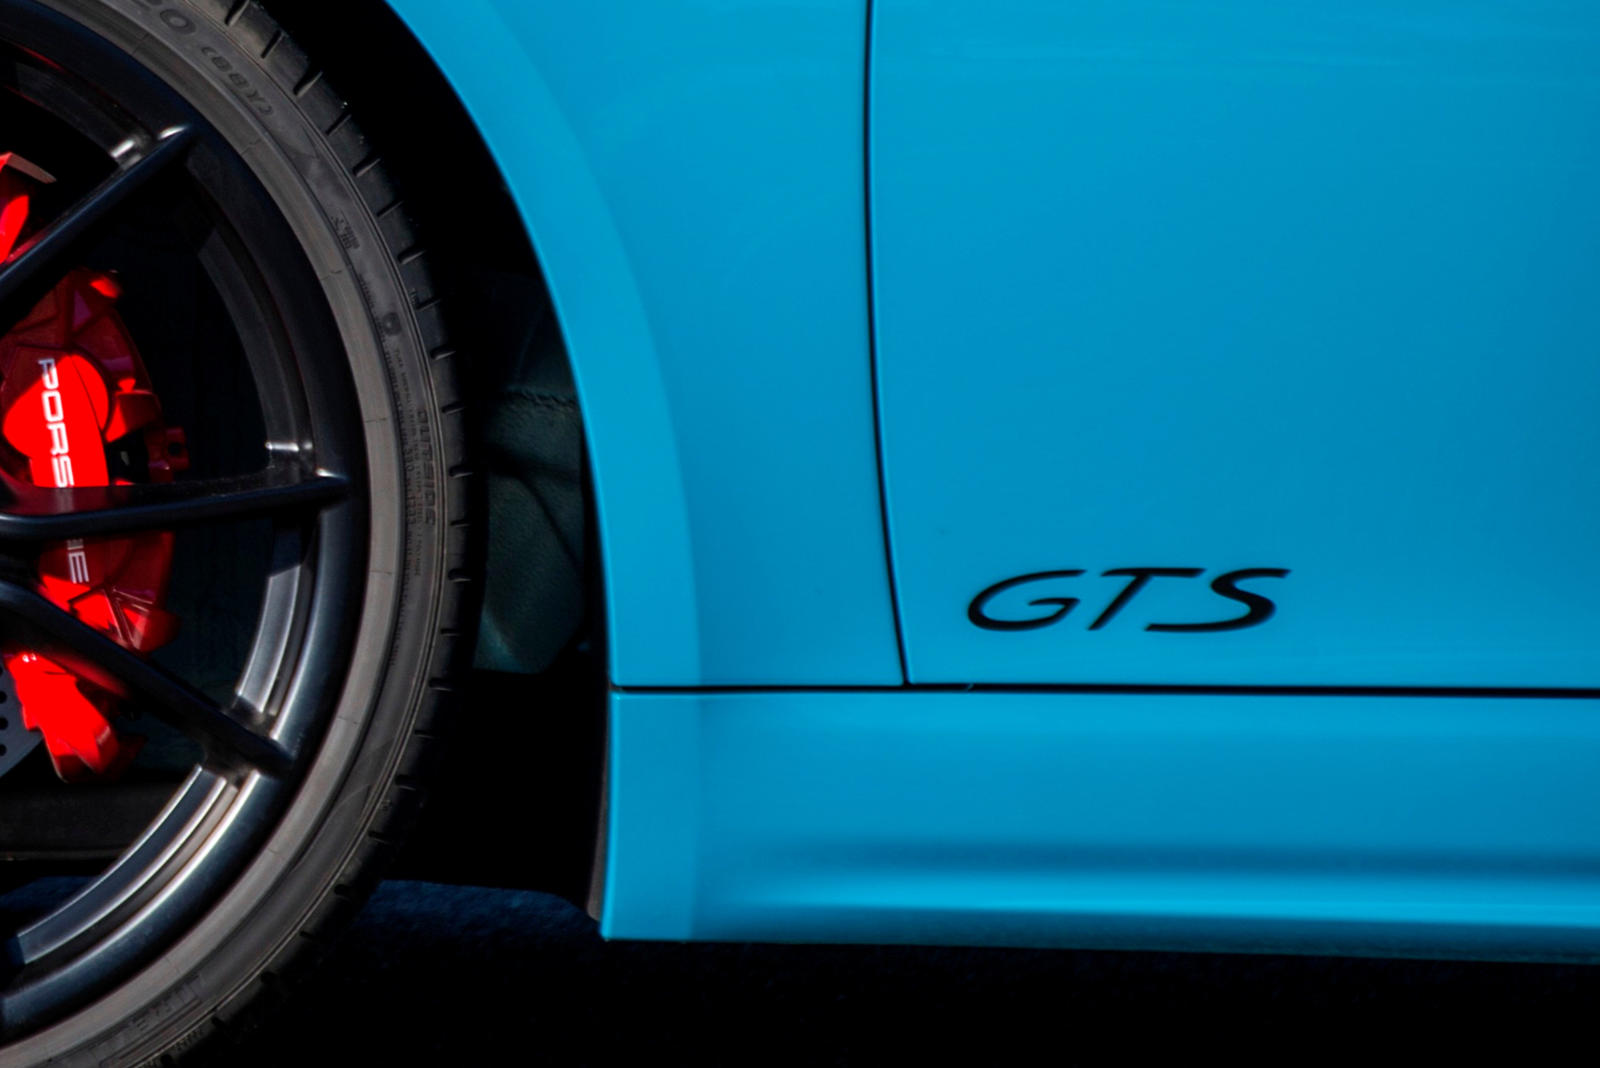 Если вам нужен высокопроизводительный Porsche, но вы не можете дотянуться до модели с надписью Turbo на задней панели, модели GTS идеально восполняют этот пробел. Фактически, мы утверждаем, что они предлагают всю производительность, которую вы можете